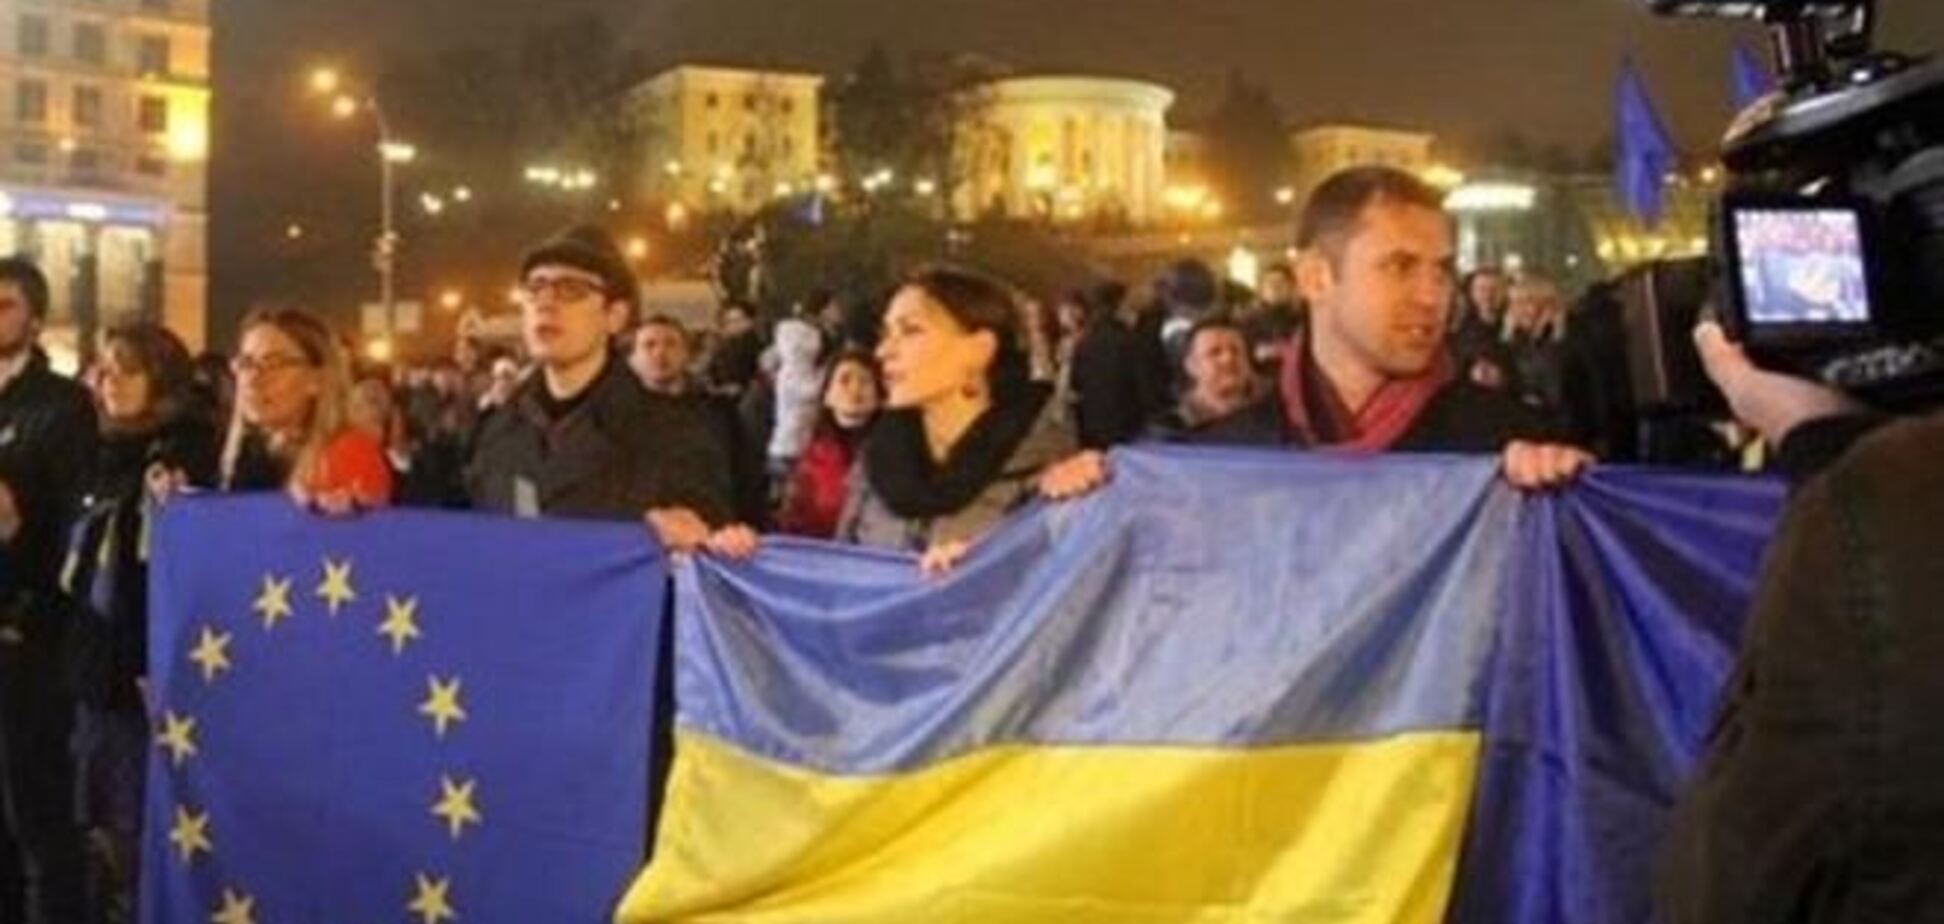 В Полтаве вербуют 'титушек' для срыва киевского Евромайдана?